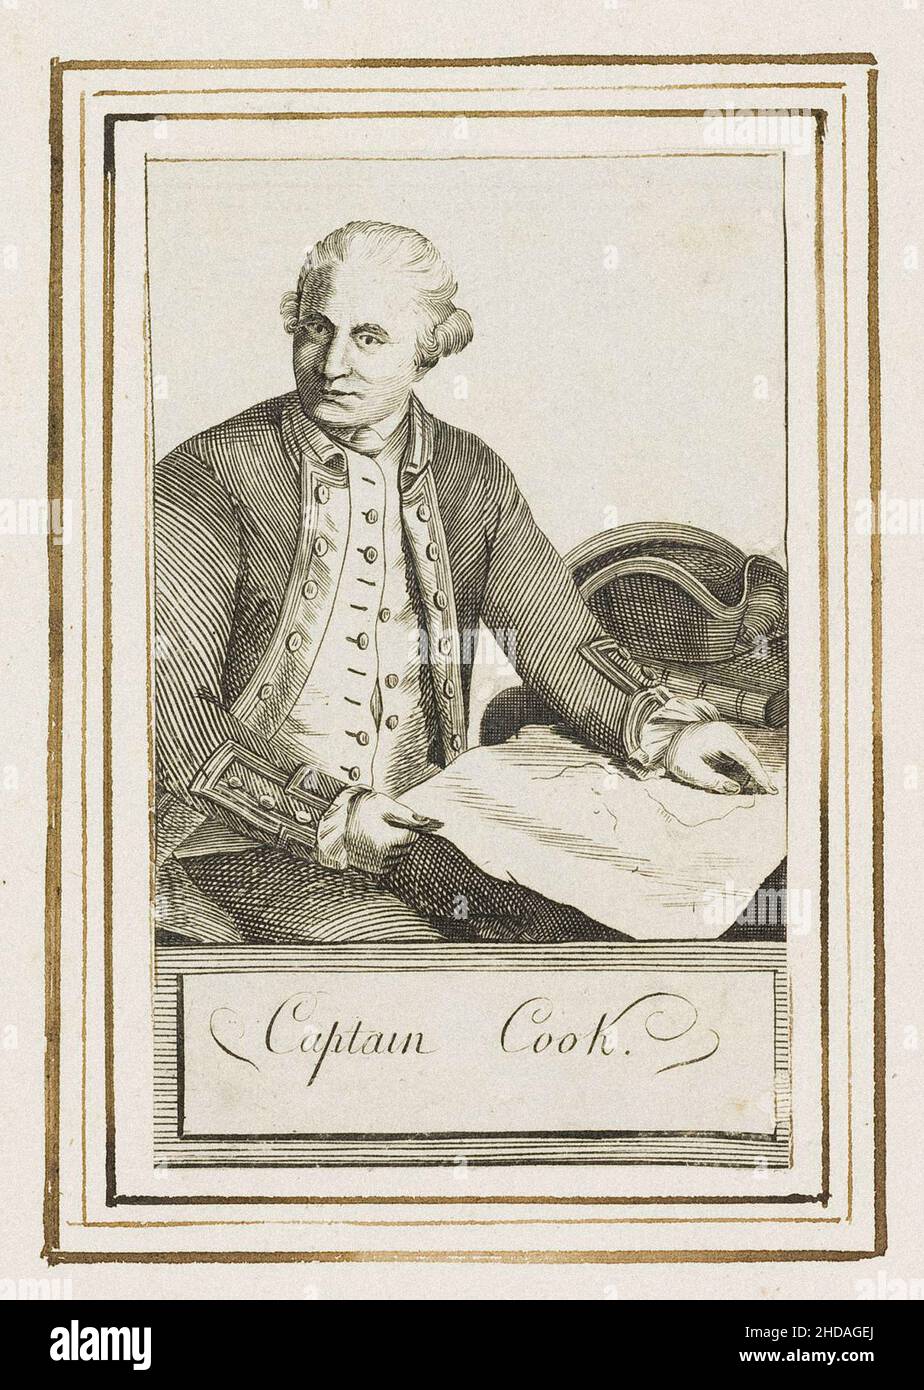 Grabado retrato del capitán James Cook. El Capitán James Cook FRS (1728 – 1779) fue un explorador, navegante, cartógrafo y capitán británico en el Bri Foto de stock